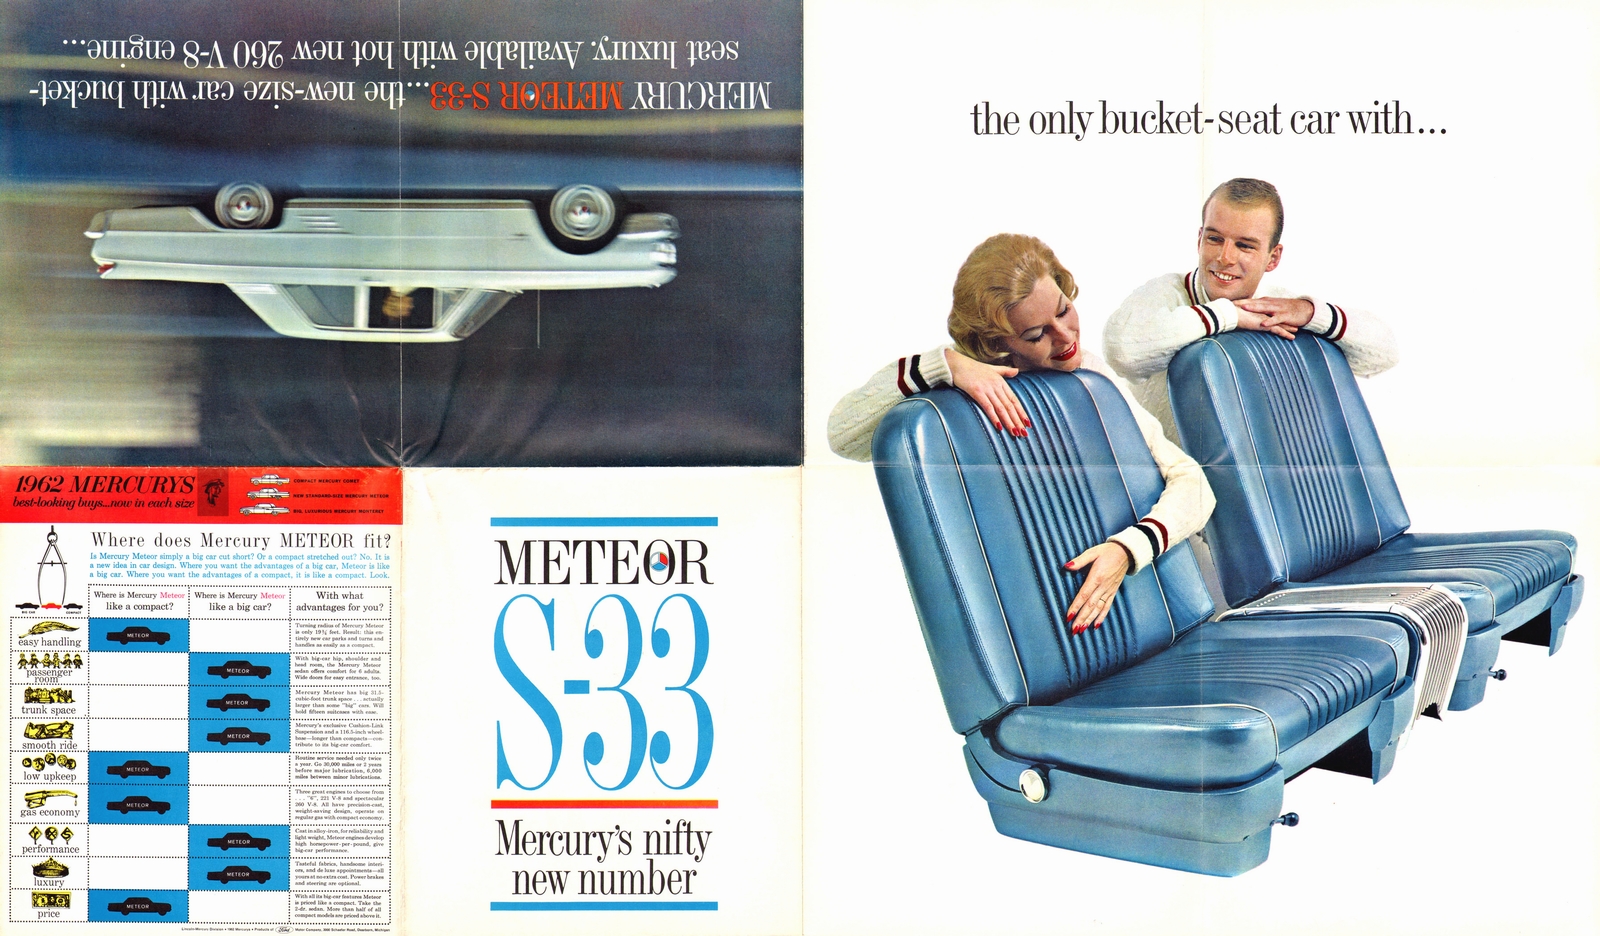 n_1962 Mercury Meteor S33-Side A1.jpg